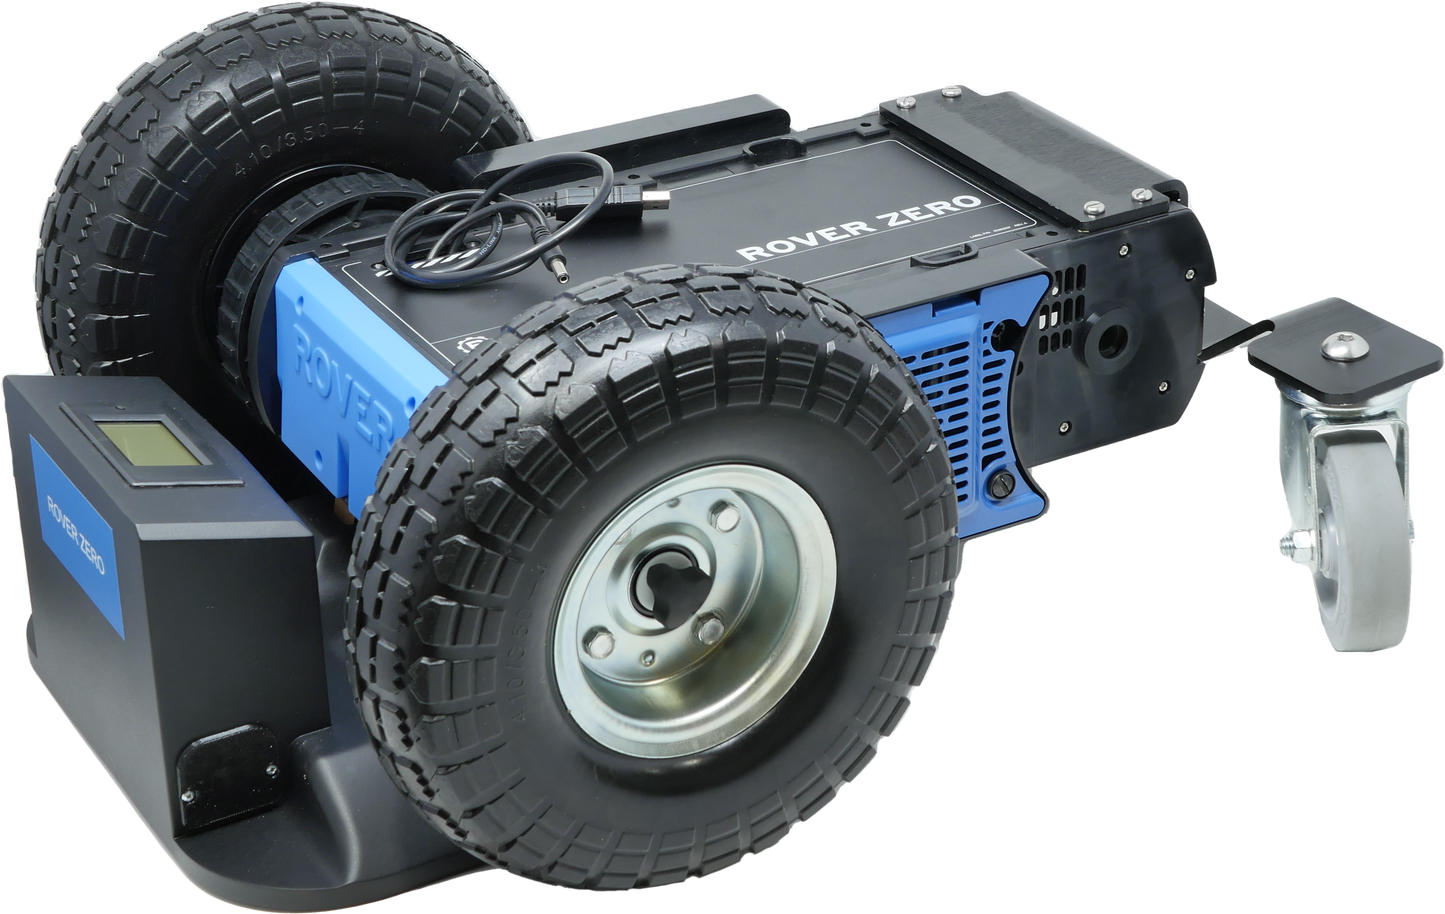 2WD Rover Zero 3 - Rover Robotics, Inc.